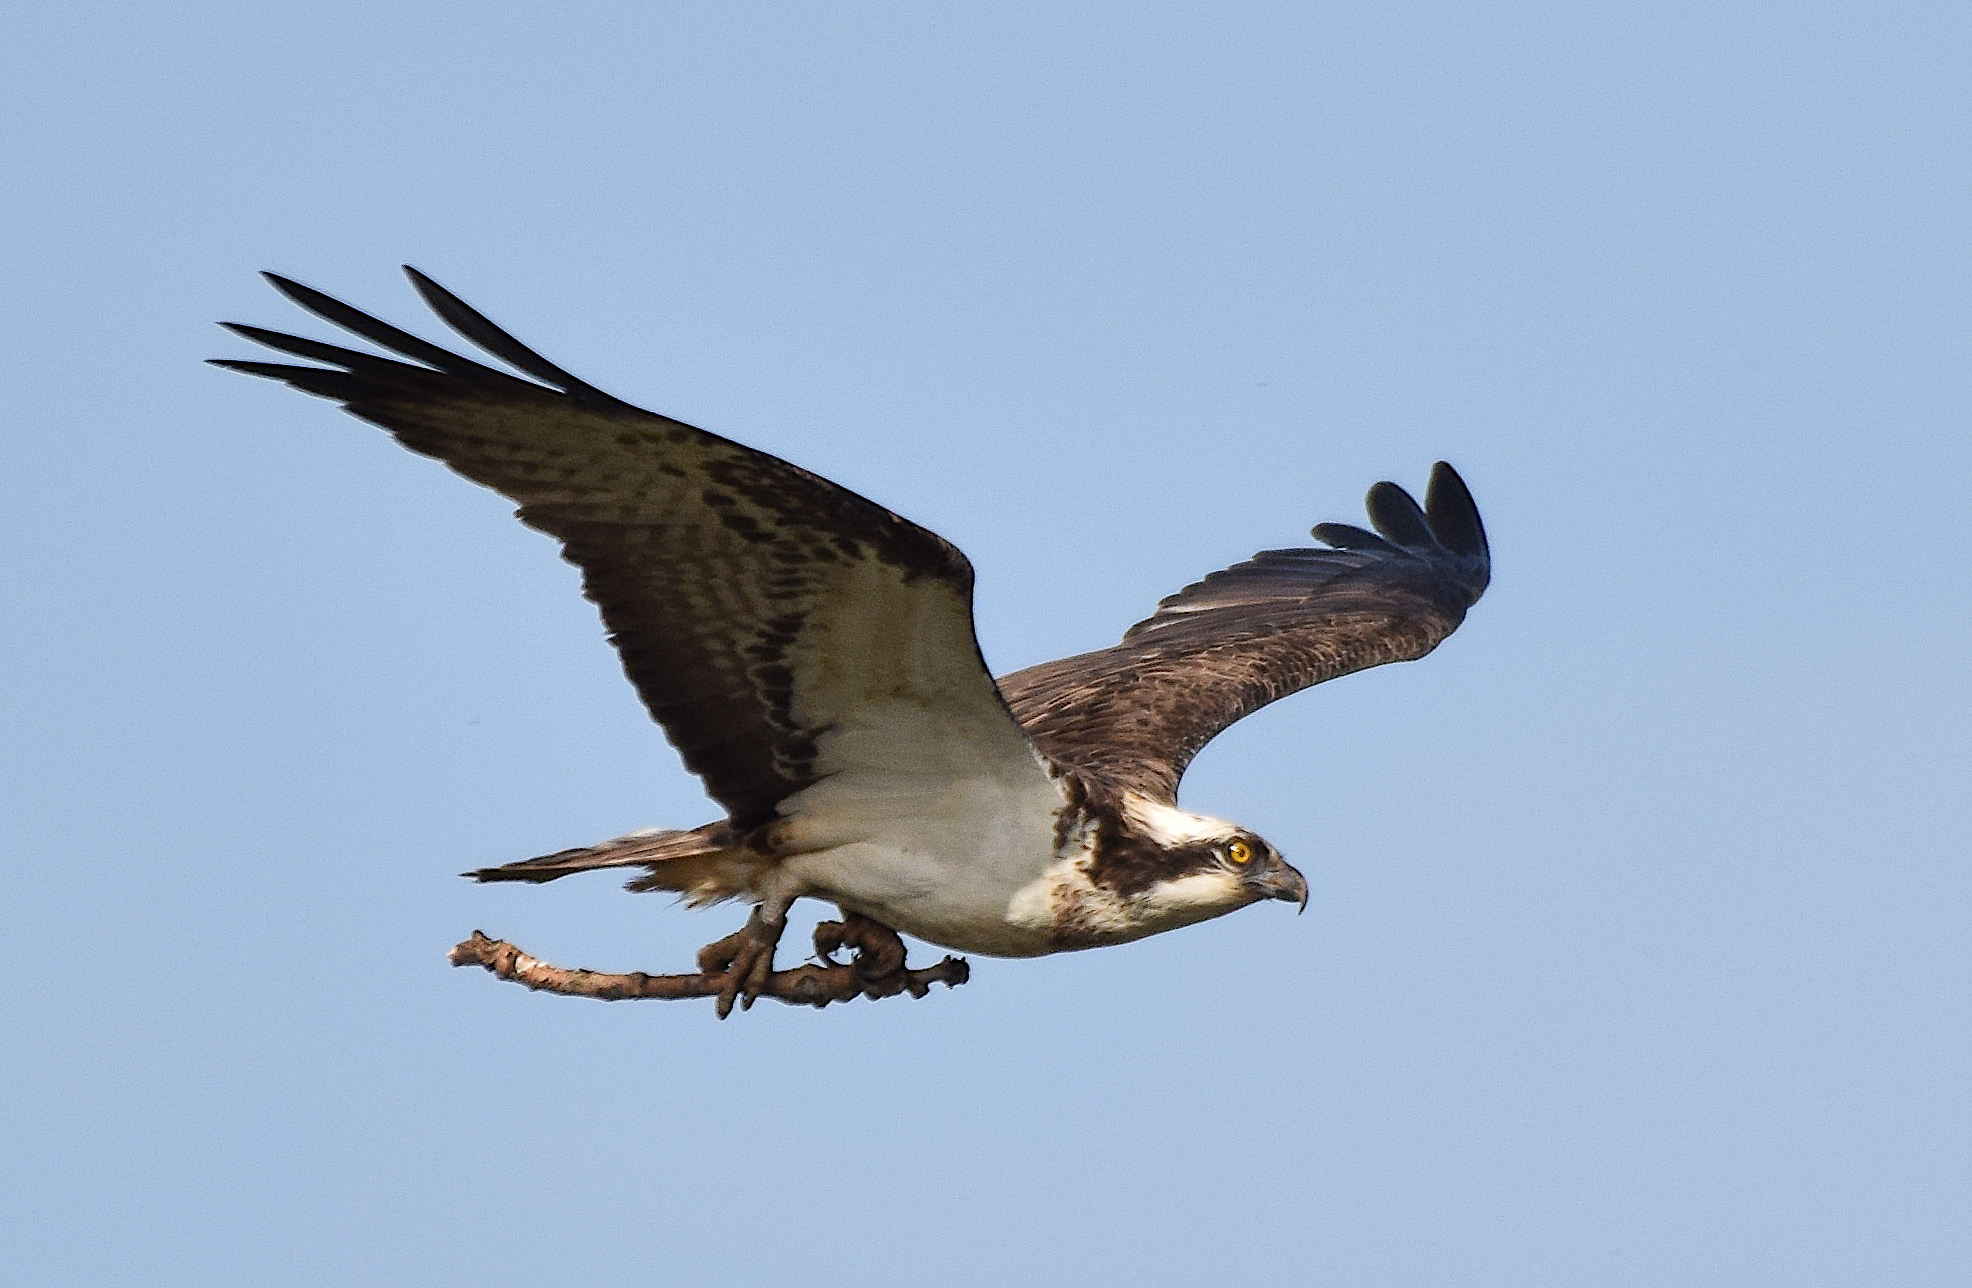 Proyecto de recuperación del Águila pescadora – Bahía de Santander